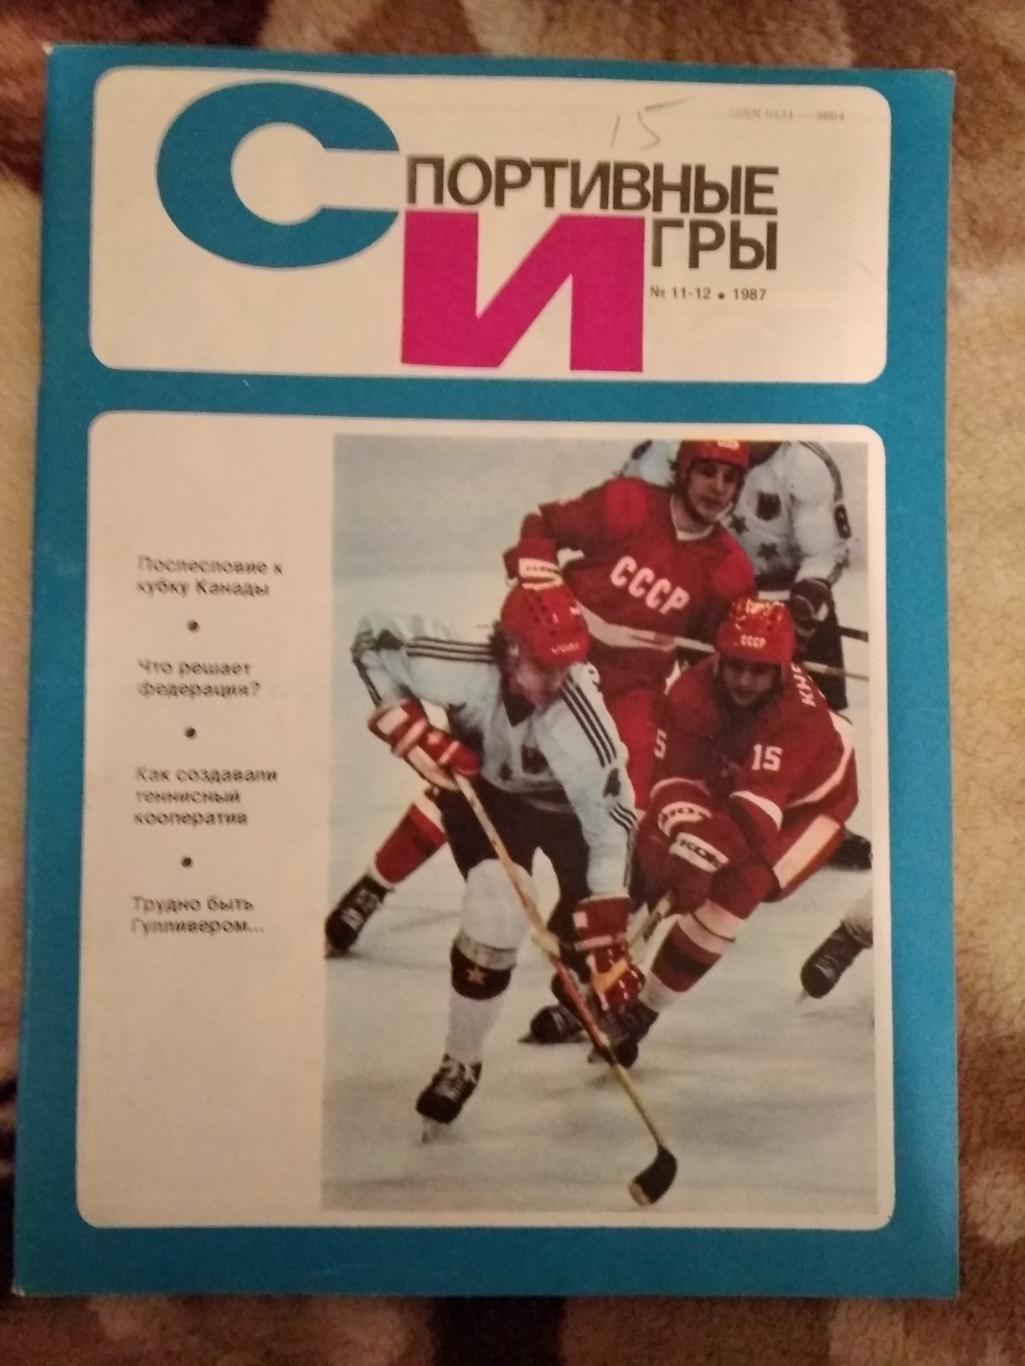 Журнал.Спортивные игры № 11-12 1987 г.